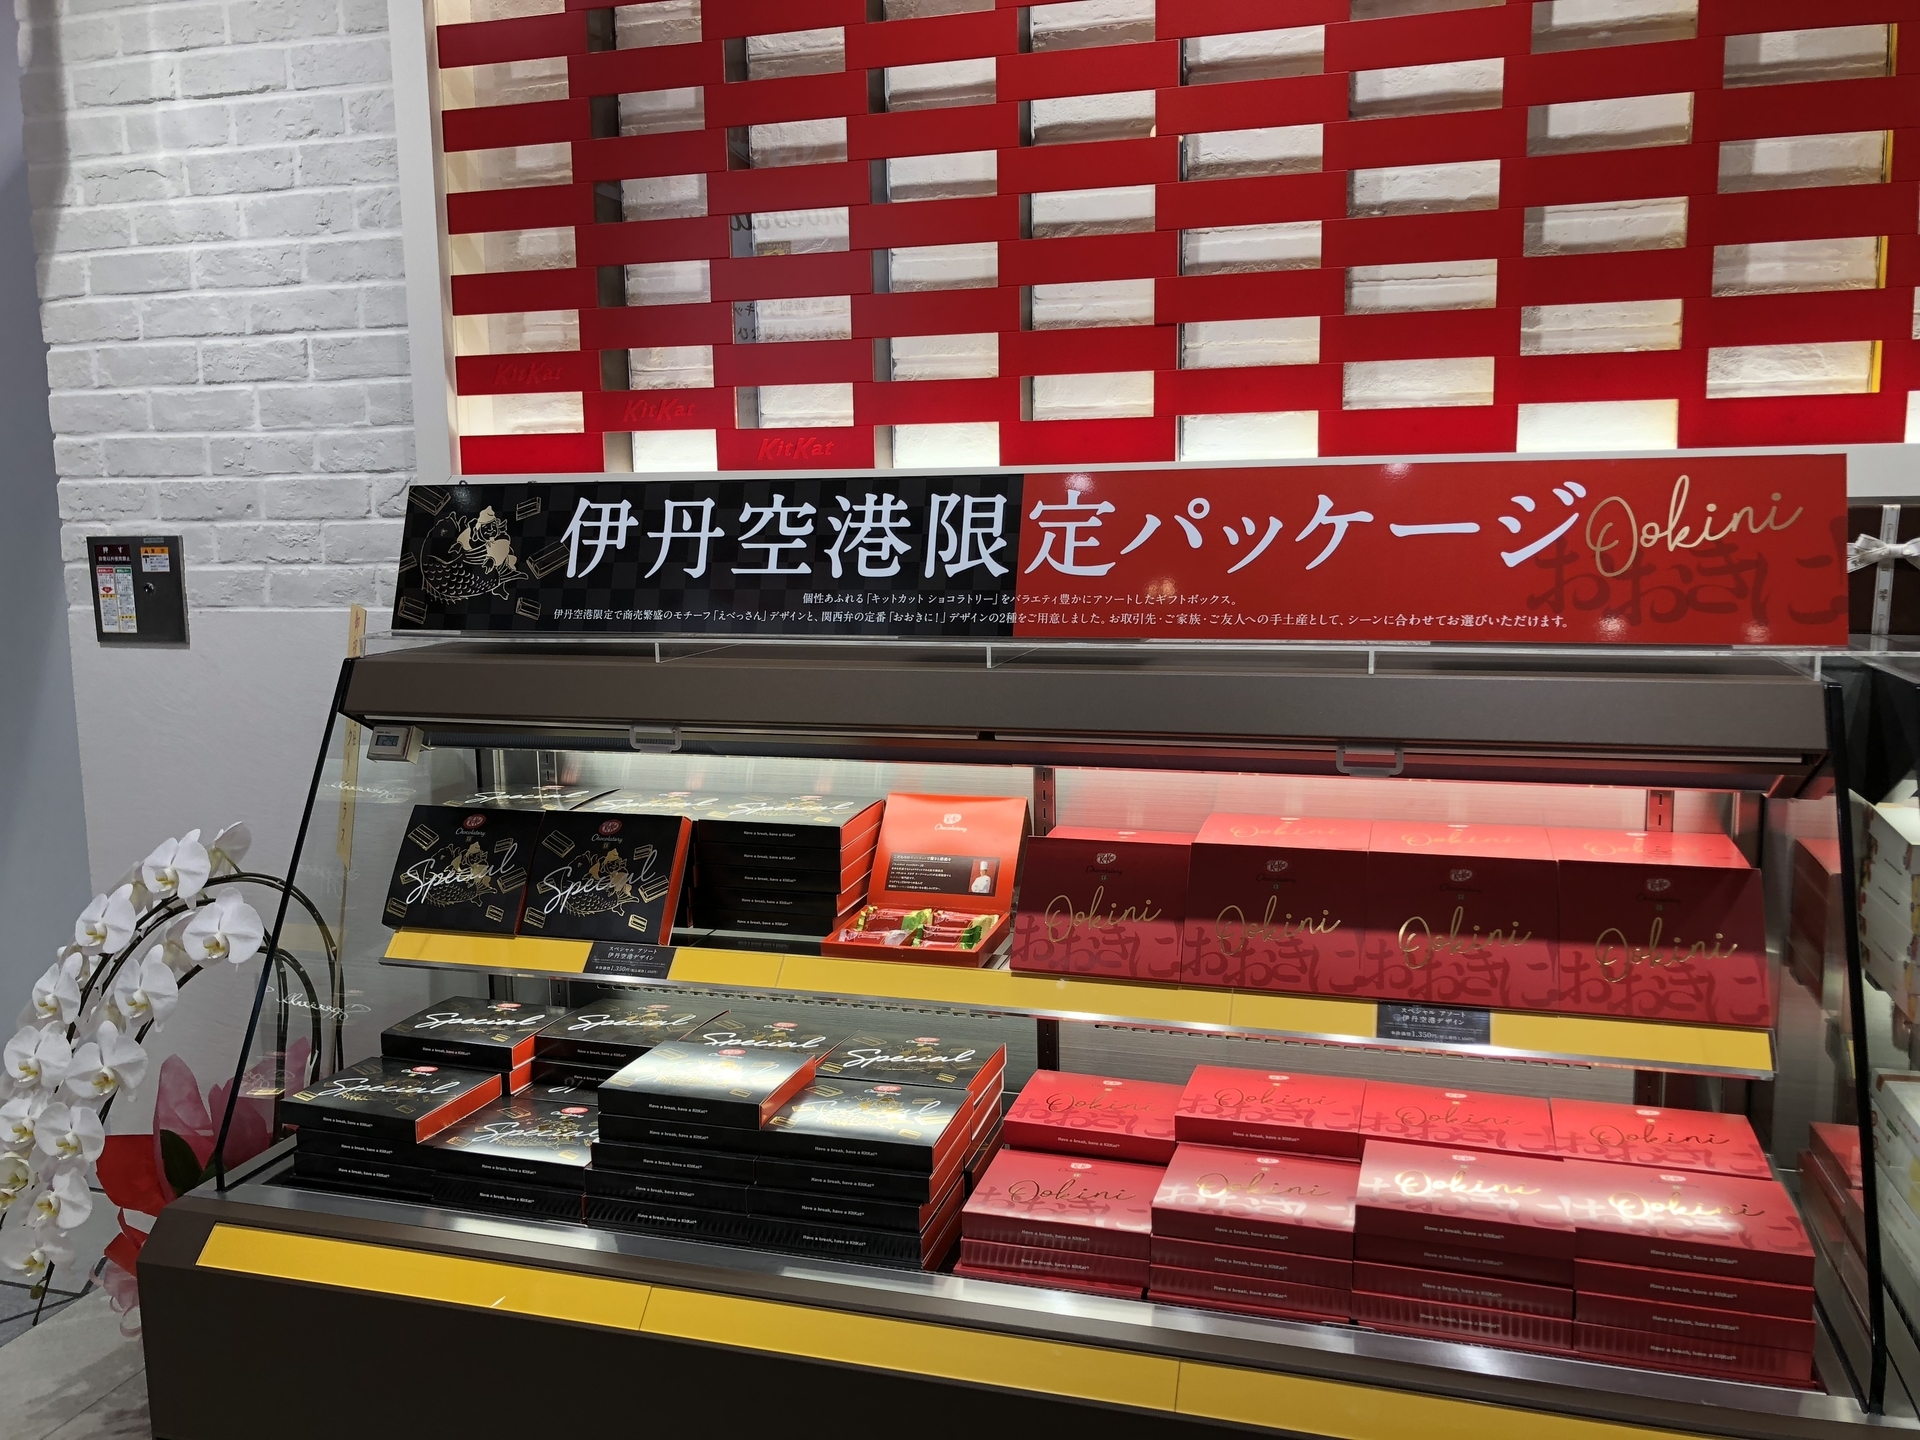 大阪国際空港 伊丹空港限定パッケージのキットカットを購入 Kobe Kitano Le Pain など関西お土産ショップがオープン クレジットカードを活用しお得に旅するミセスのちょっとイイ話